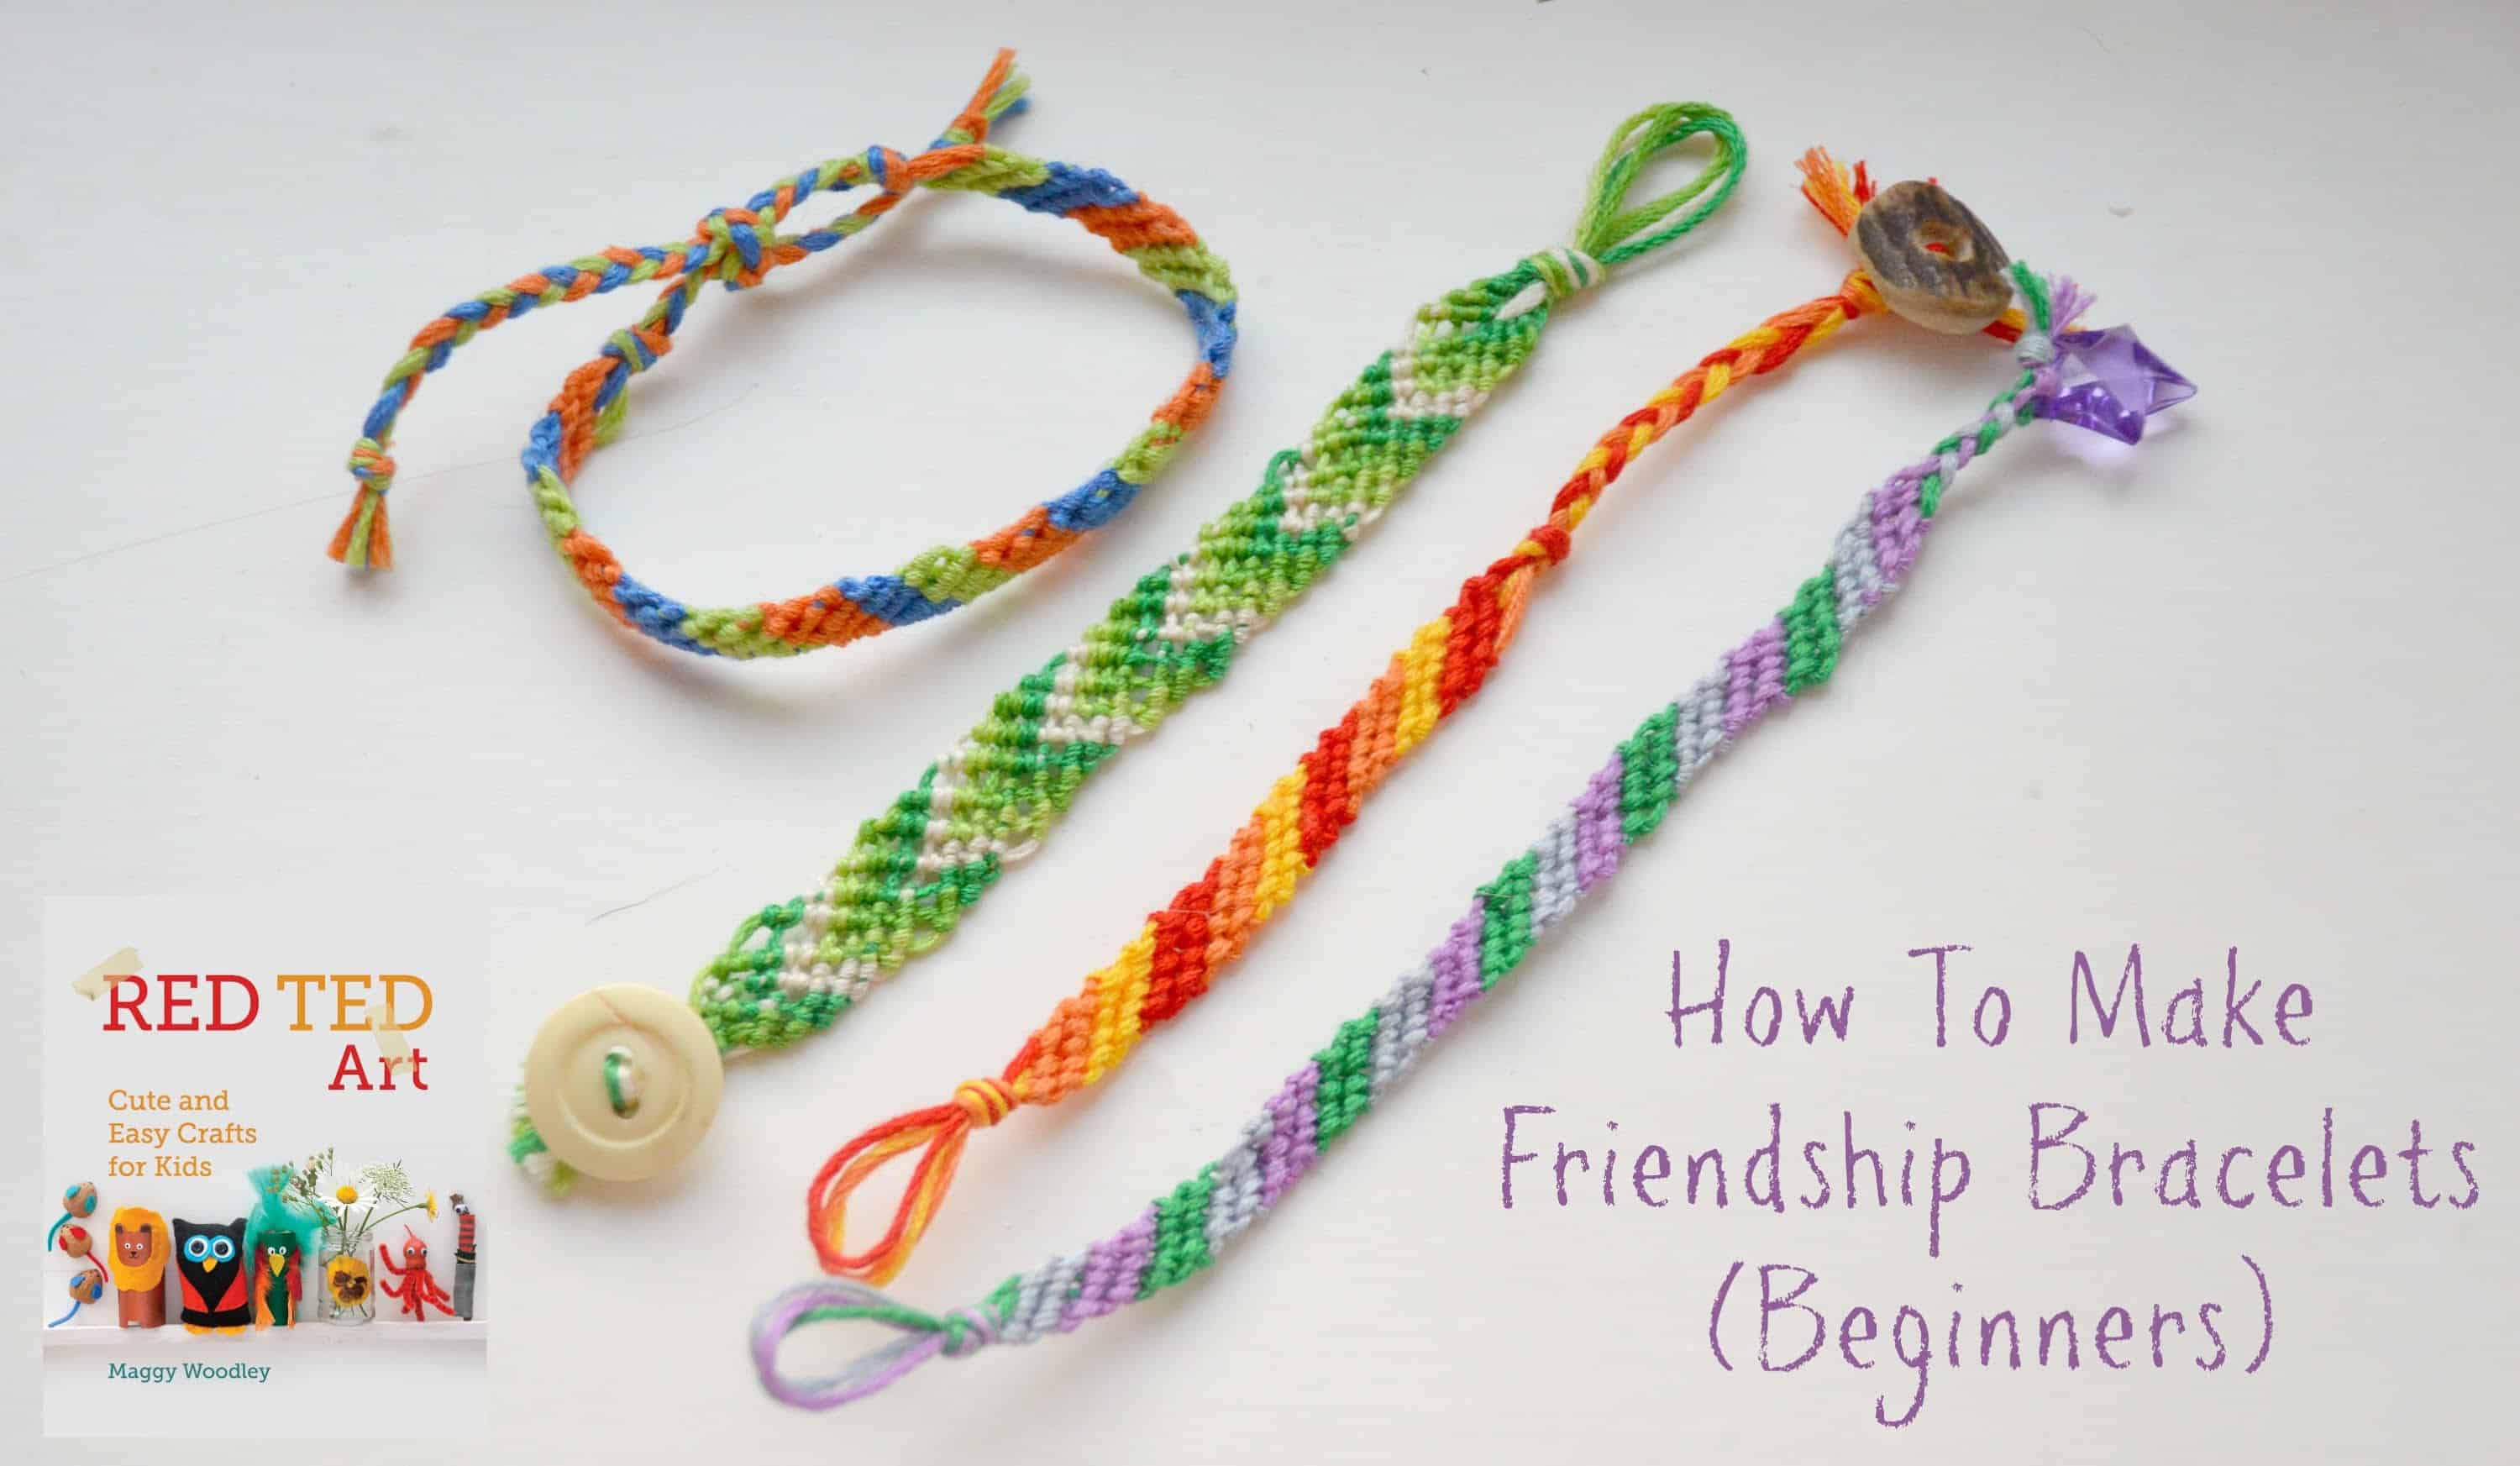 Beginner friendship bracelet designs with button closures